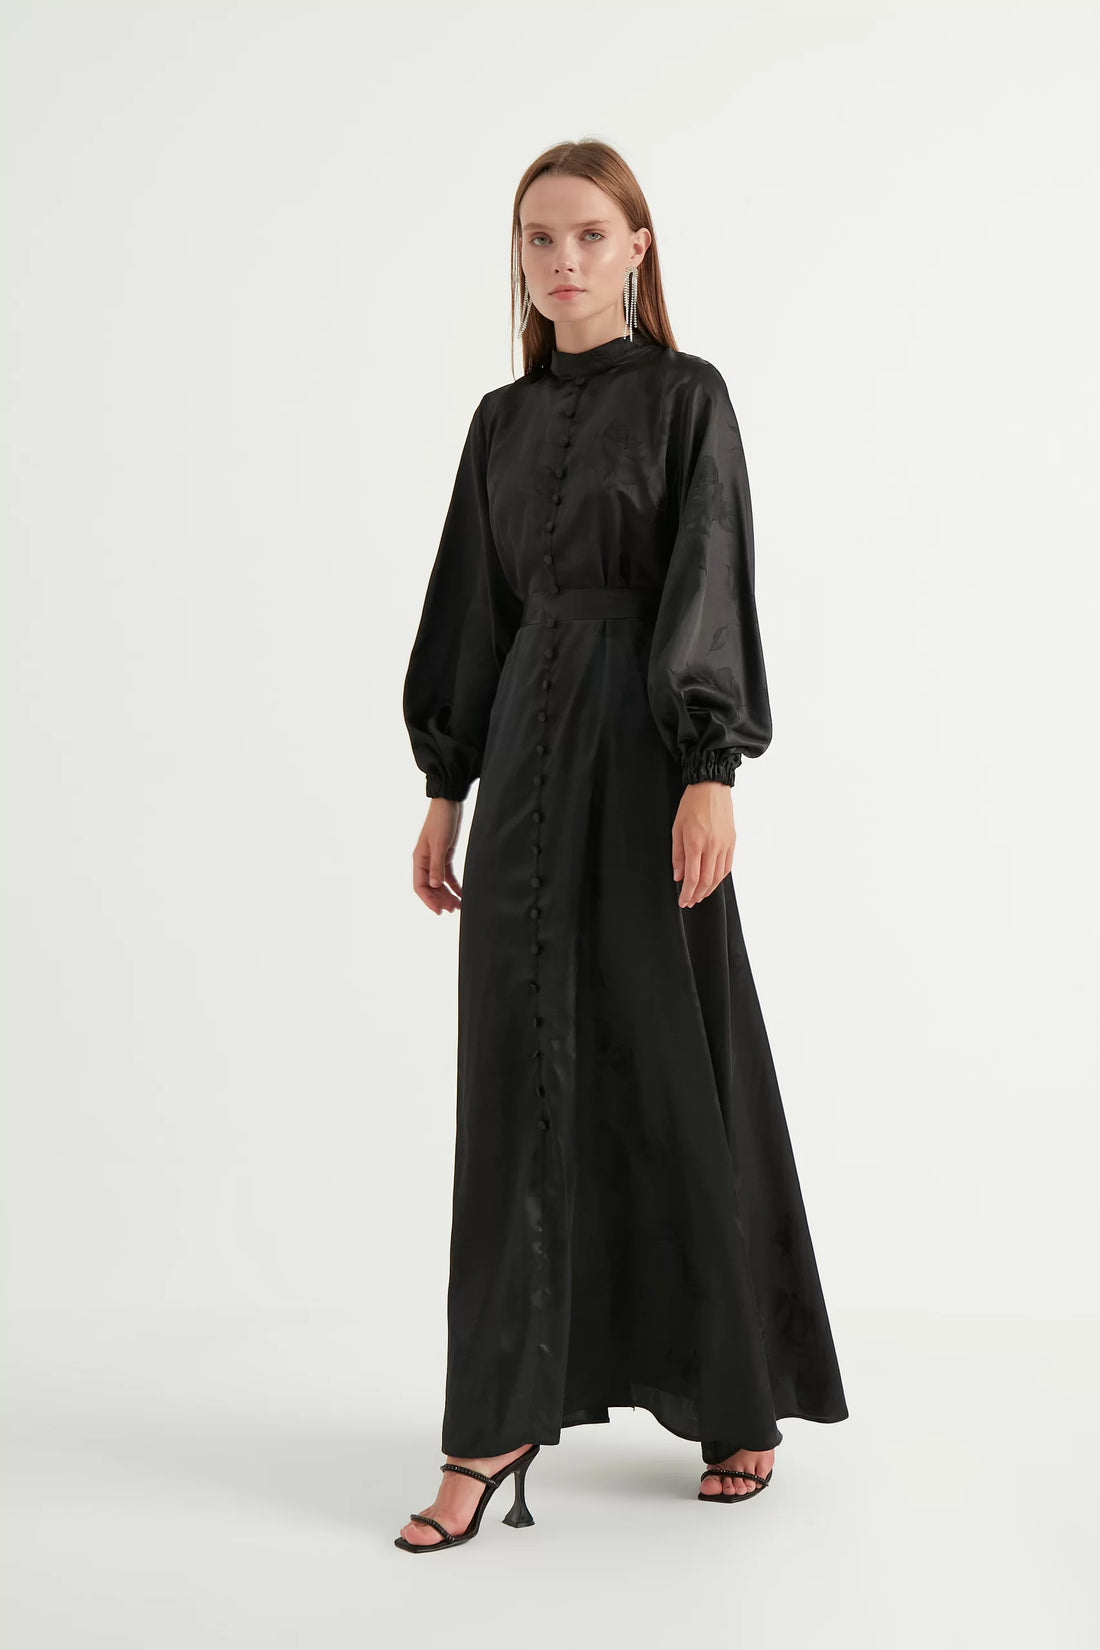 فستان سهرة ستان أسود من ديانا